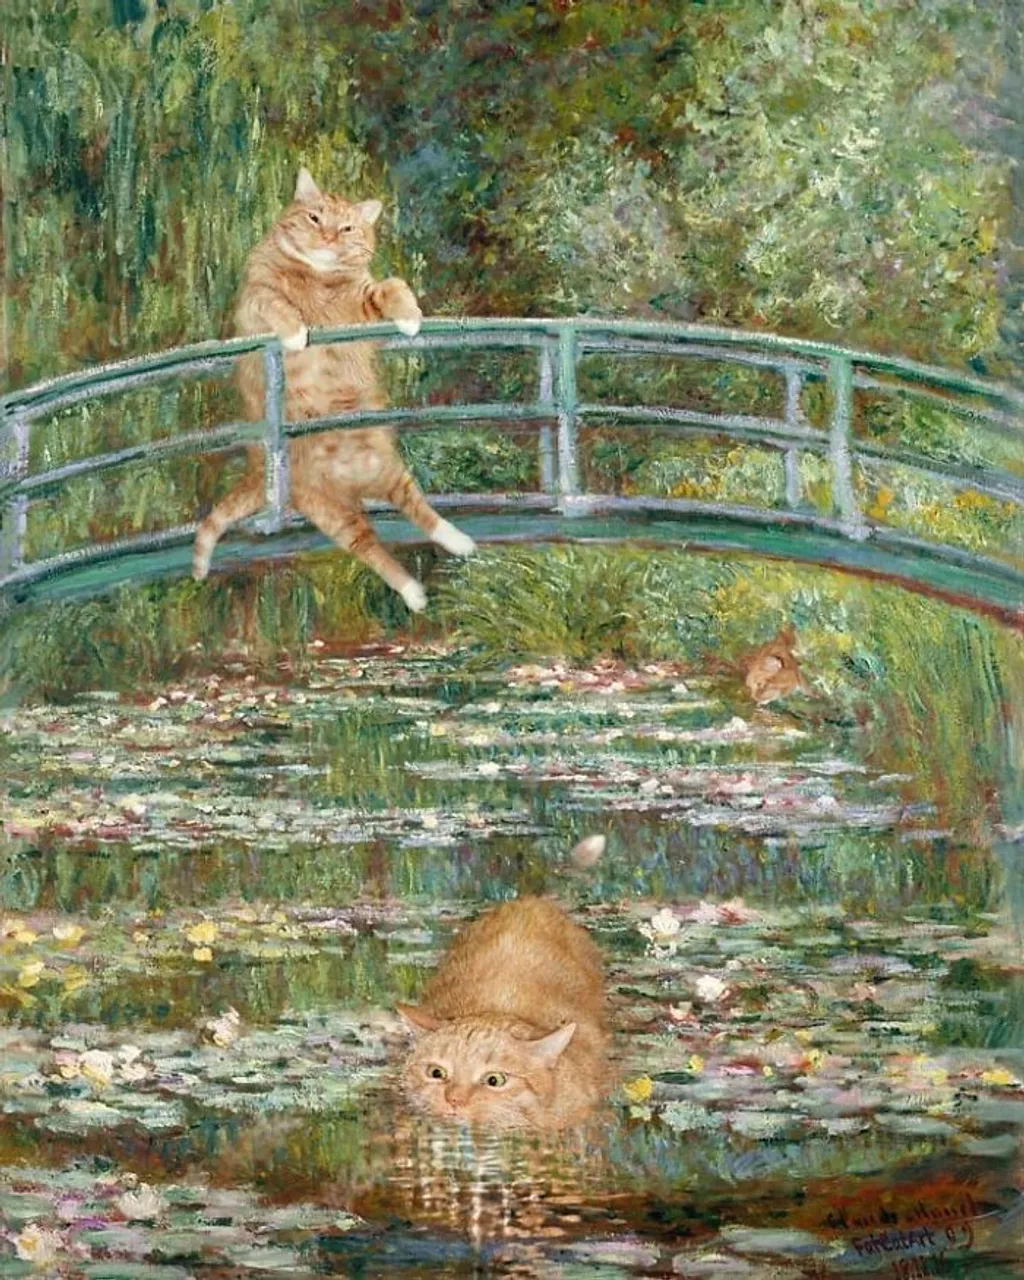 macska a festményeken galéria 